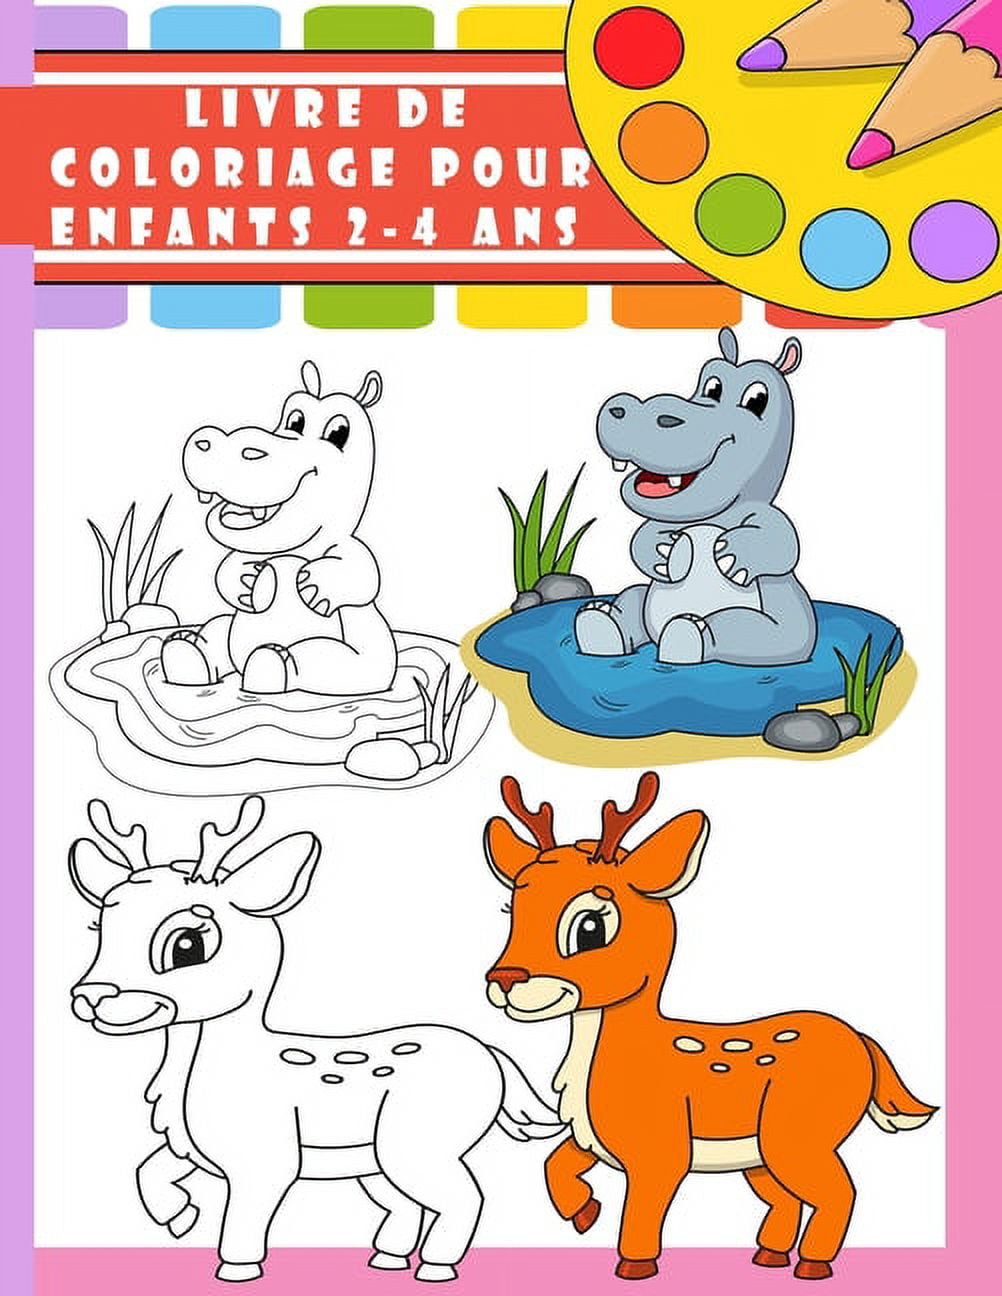 livre de coloriage pour enfants 2-4 ans: Livre de Coloriage Pour